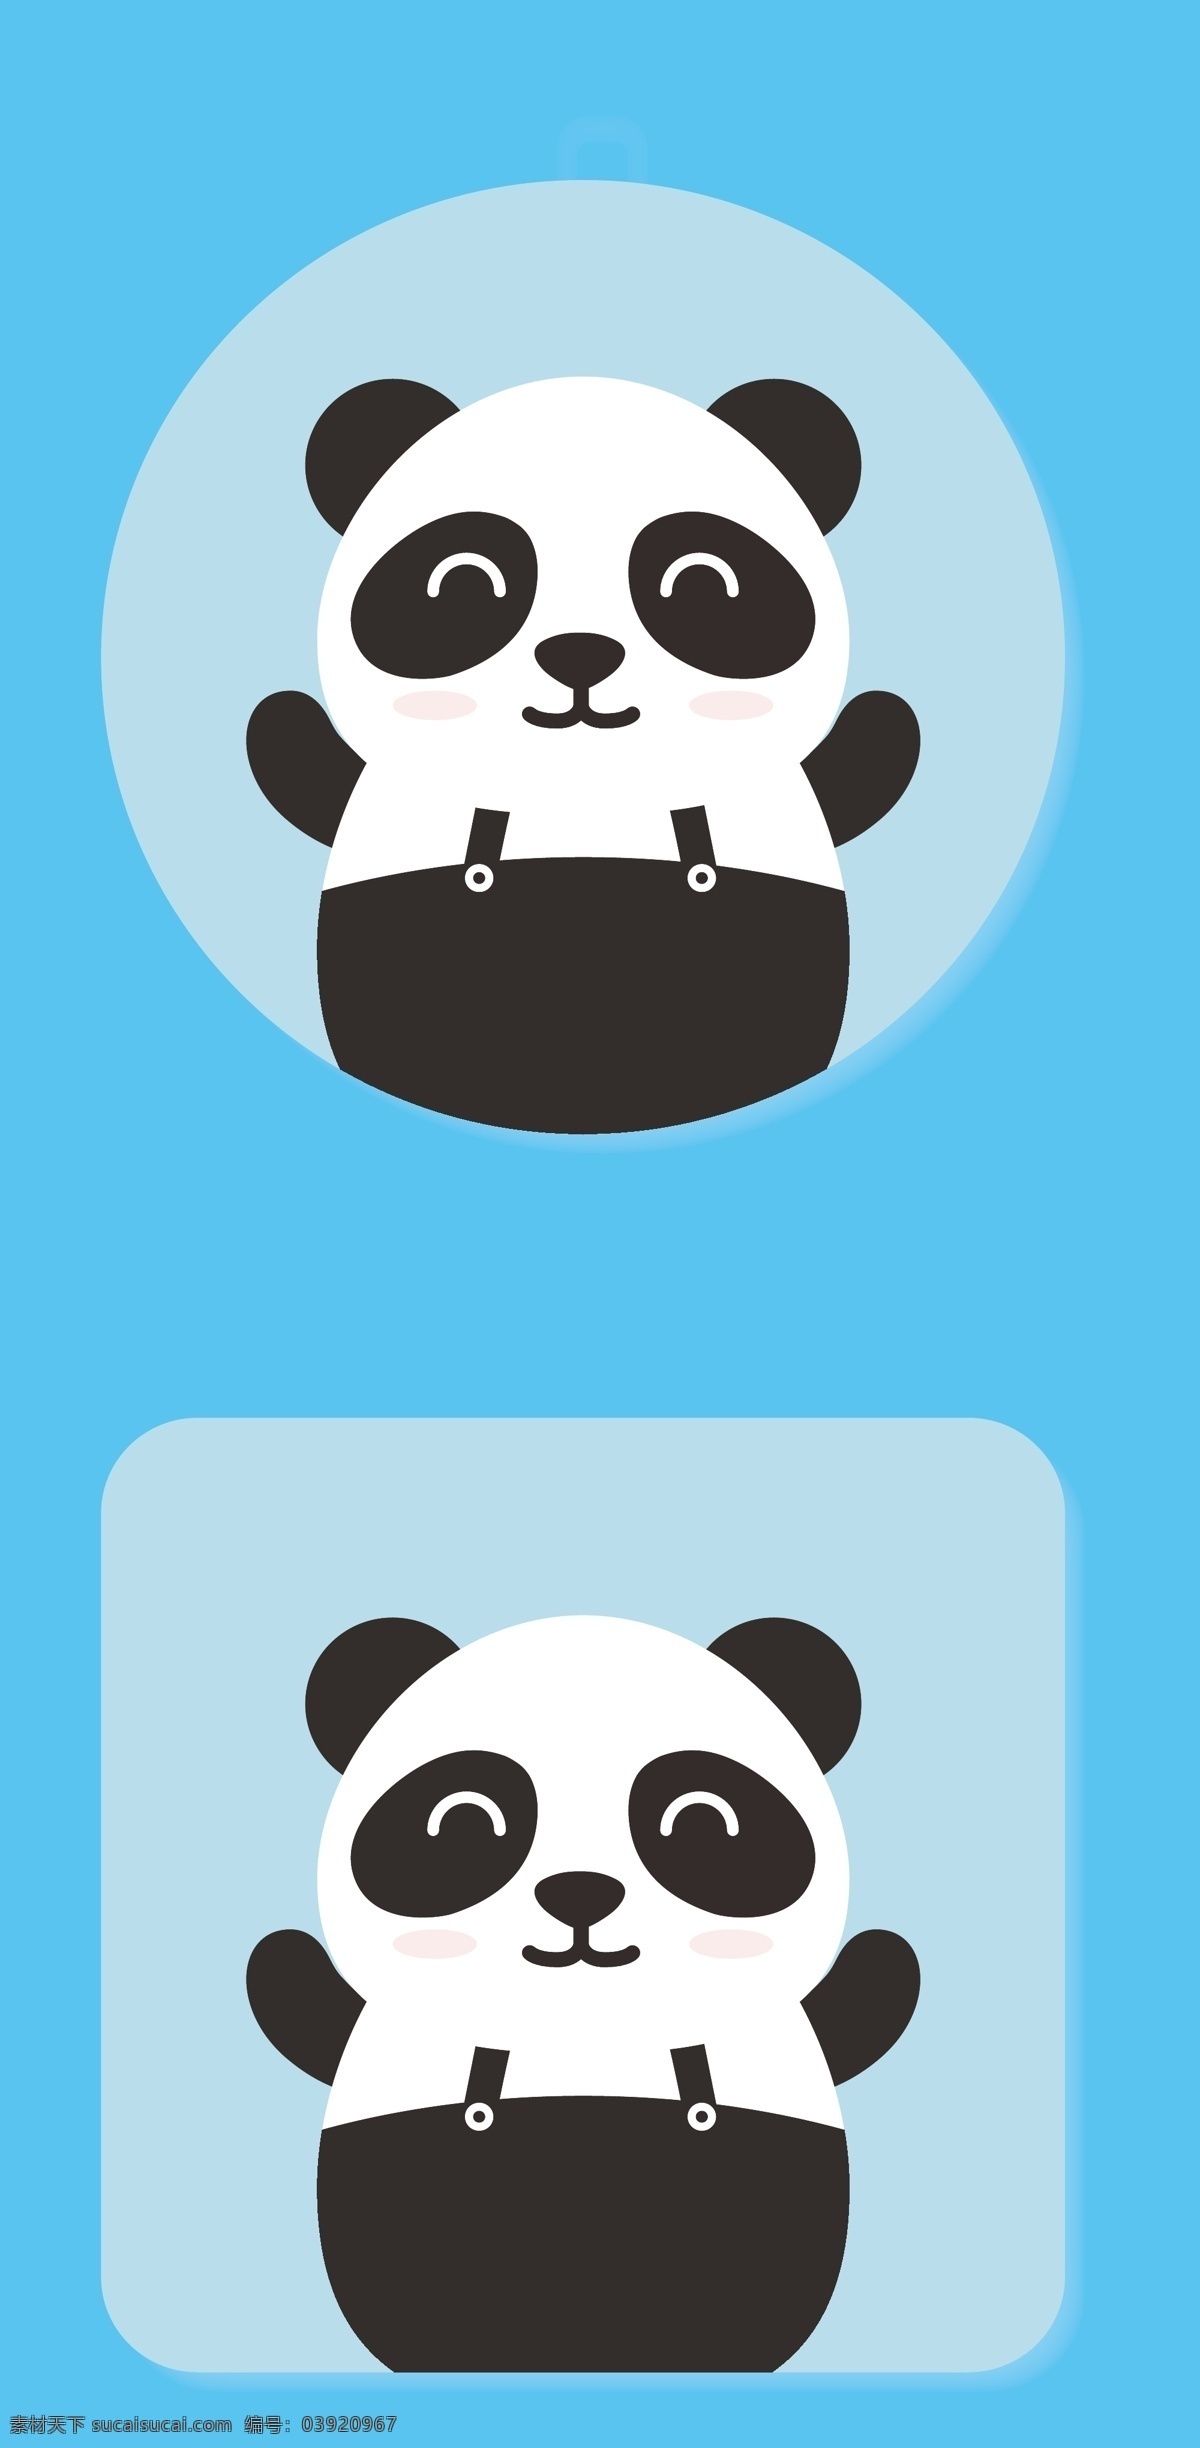 中国国宝熊猫 背带裤 国宝 熊猫 黑白色 可爱 动漫动画 动漫人物